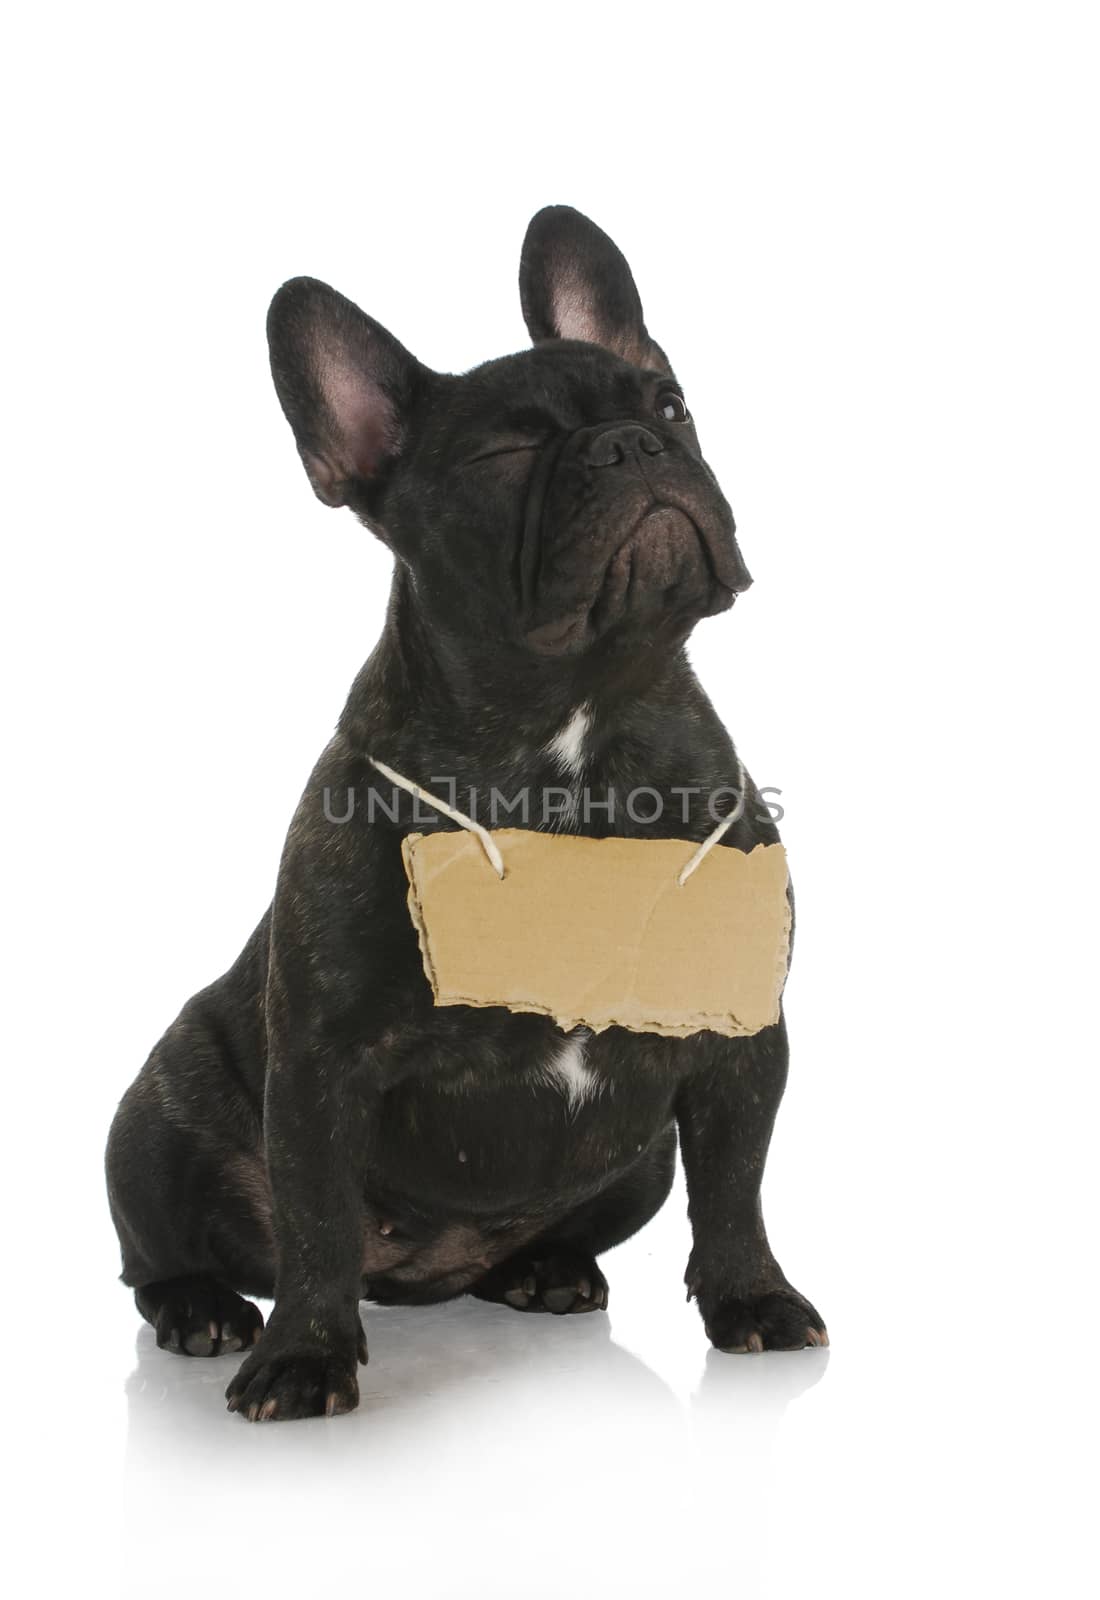 dog winking - french bulldog winking while wearing cardboard sign around neck on white background